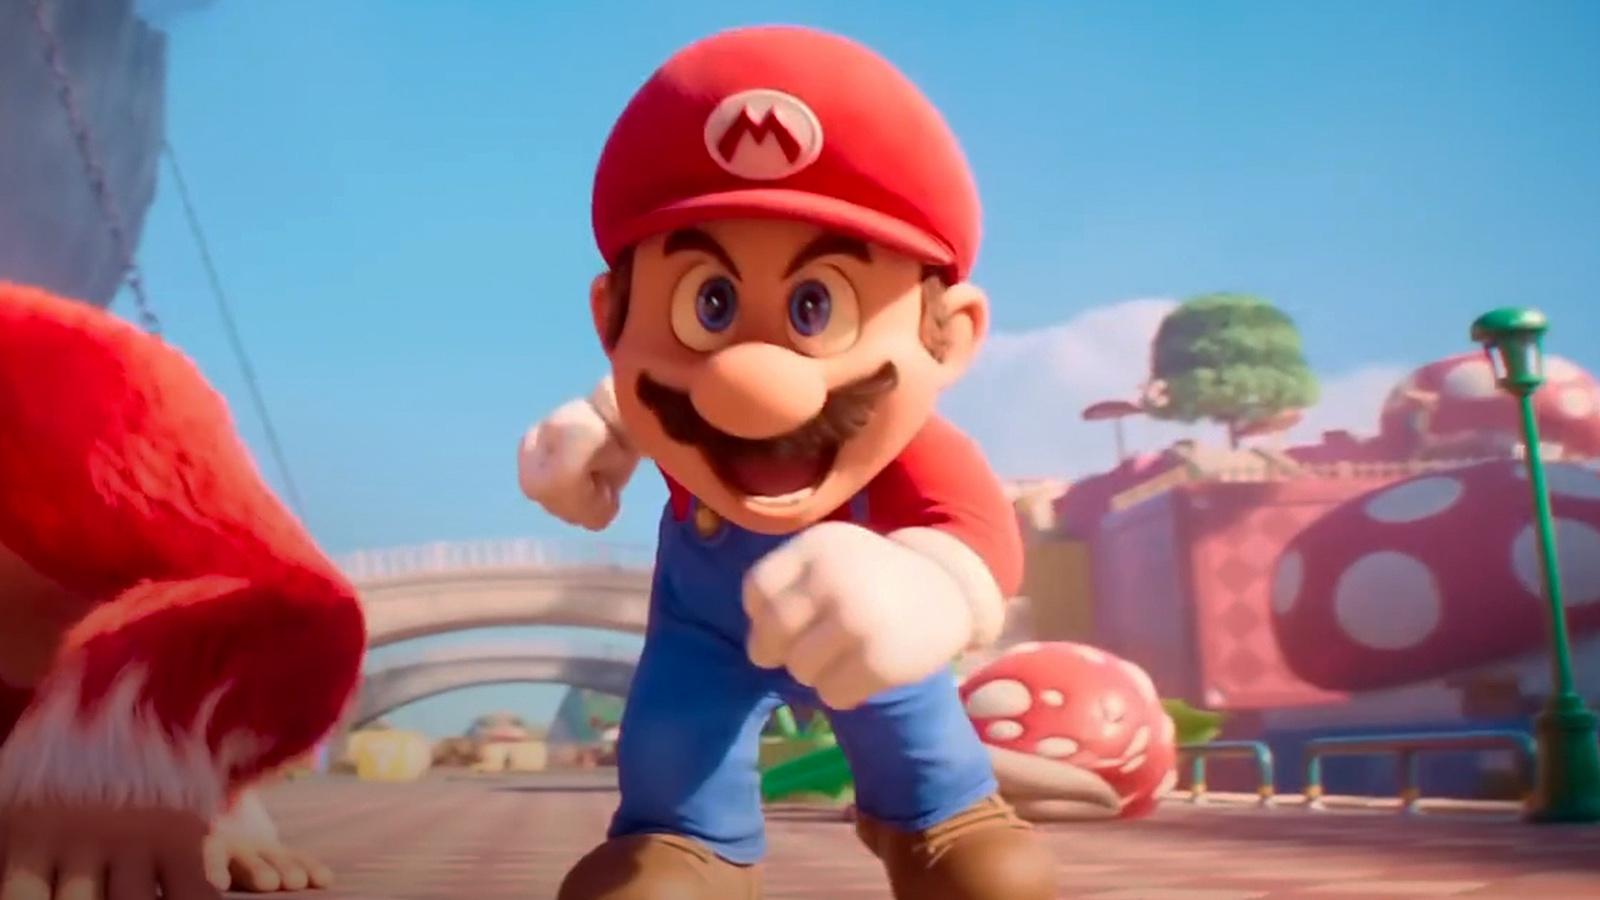 Mario in The Super Mario Bros Movie